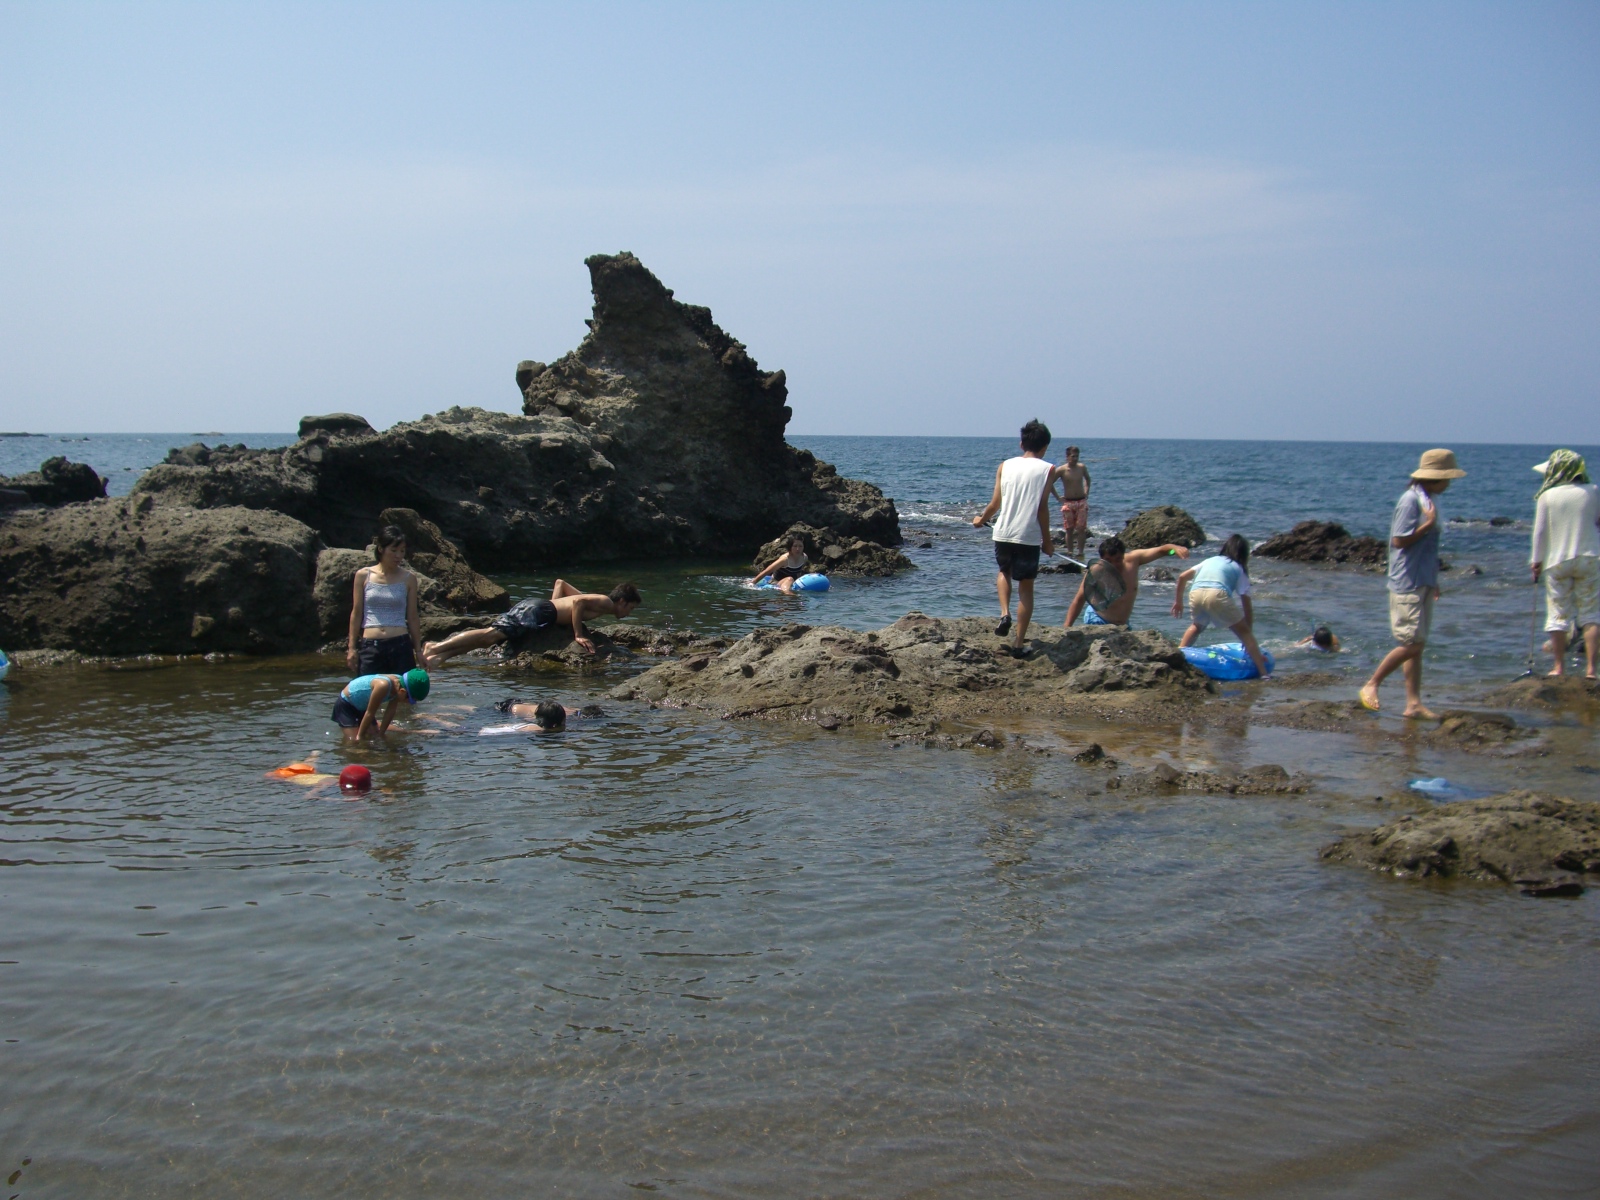 薬師堂海水浴場の中央に岩場があり岩の上に立って遠くを眺めている人や海水で遊ぶ子どもたちの写真